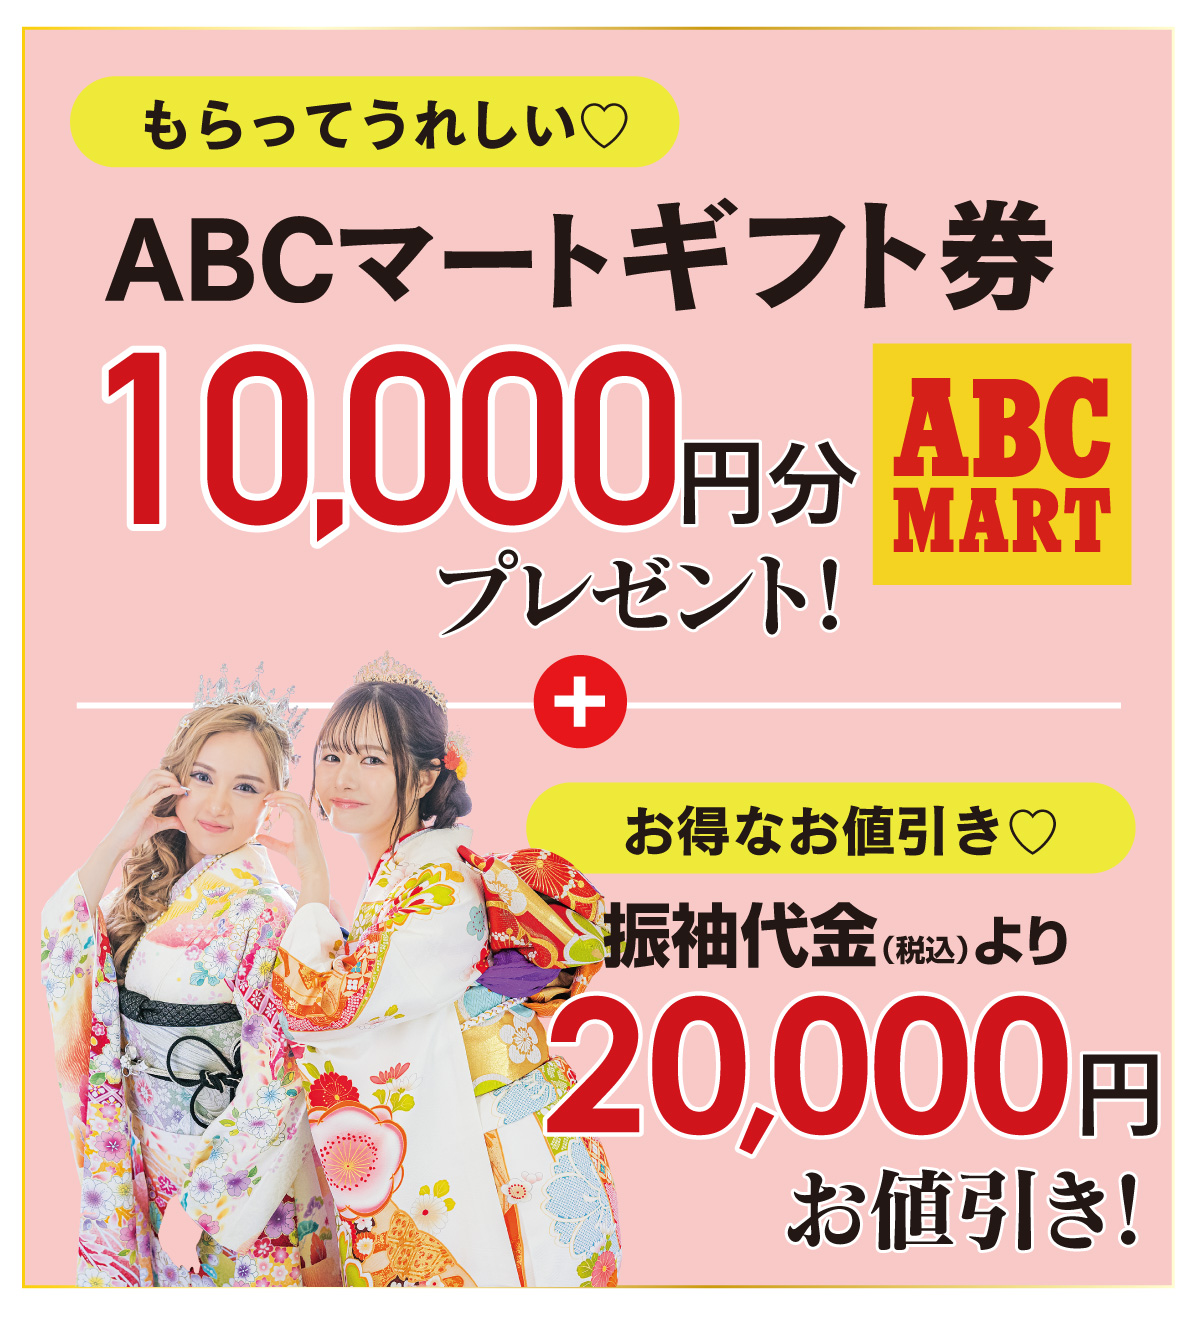 ABCギフト件 or 2万円引き